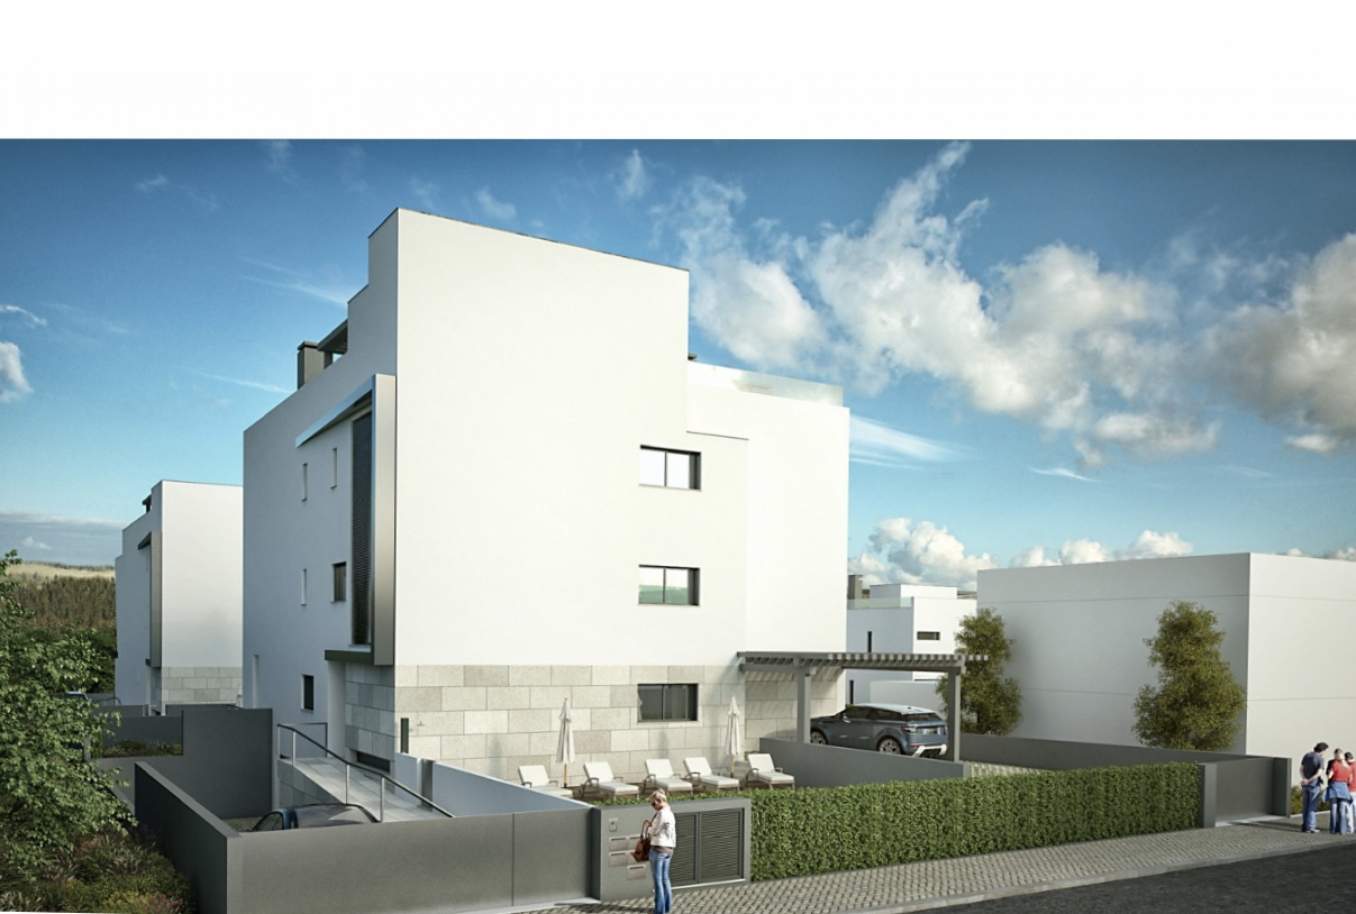 Venda de apartamento com vista mar, Tavira, Algarve, Portugal_138735